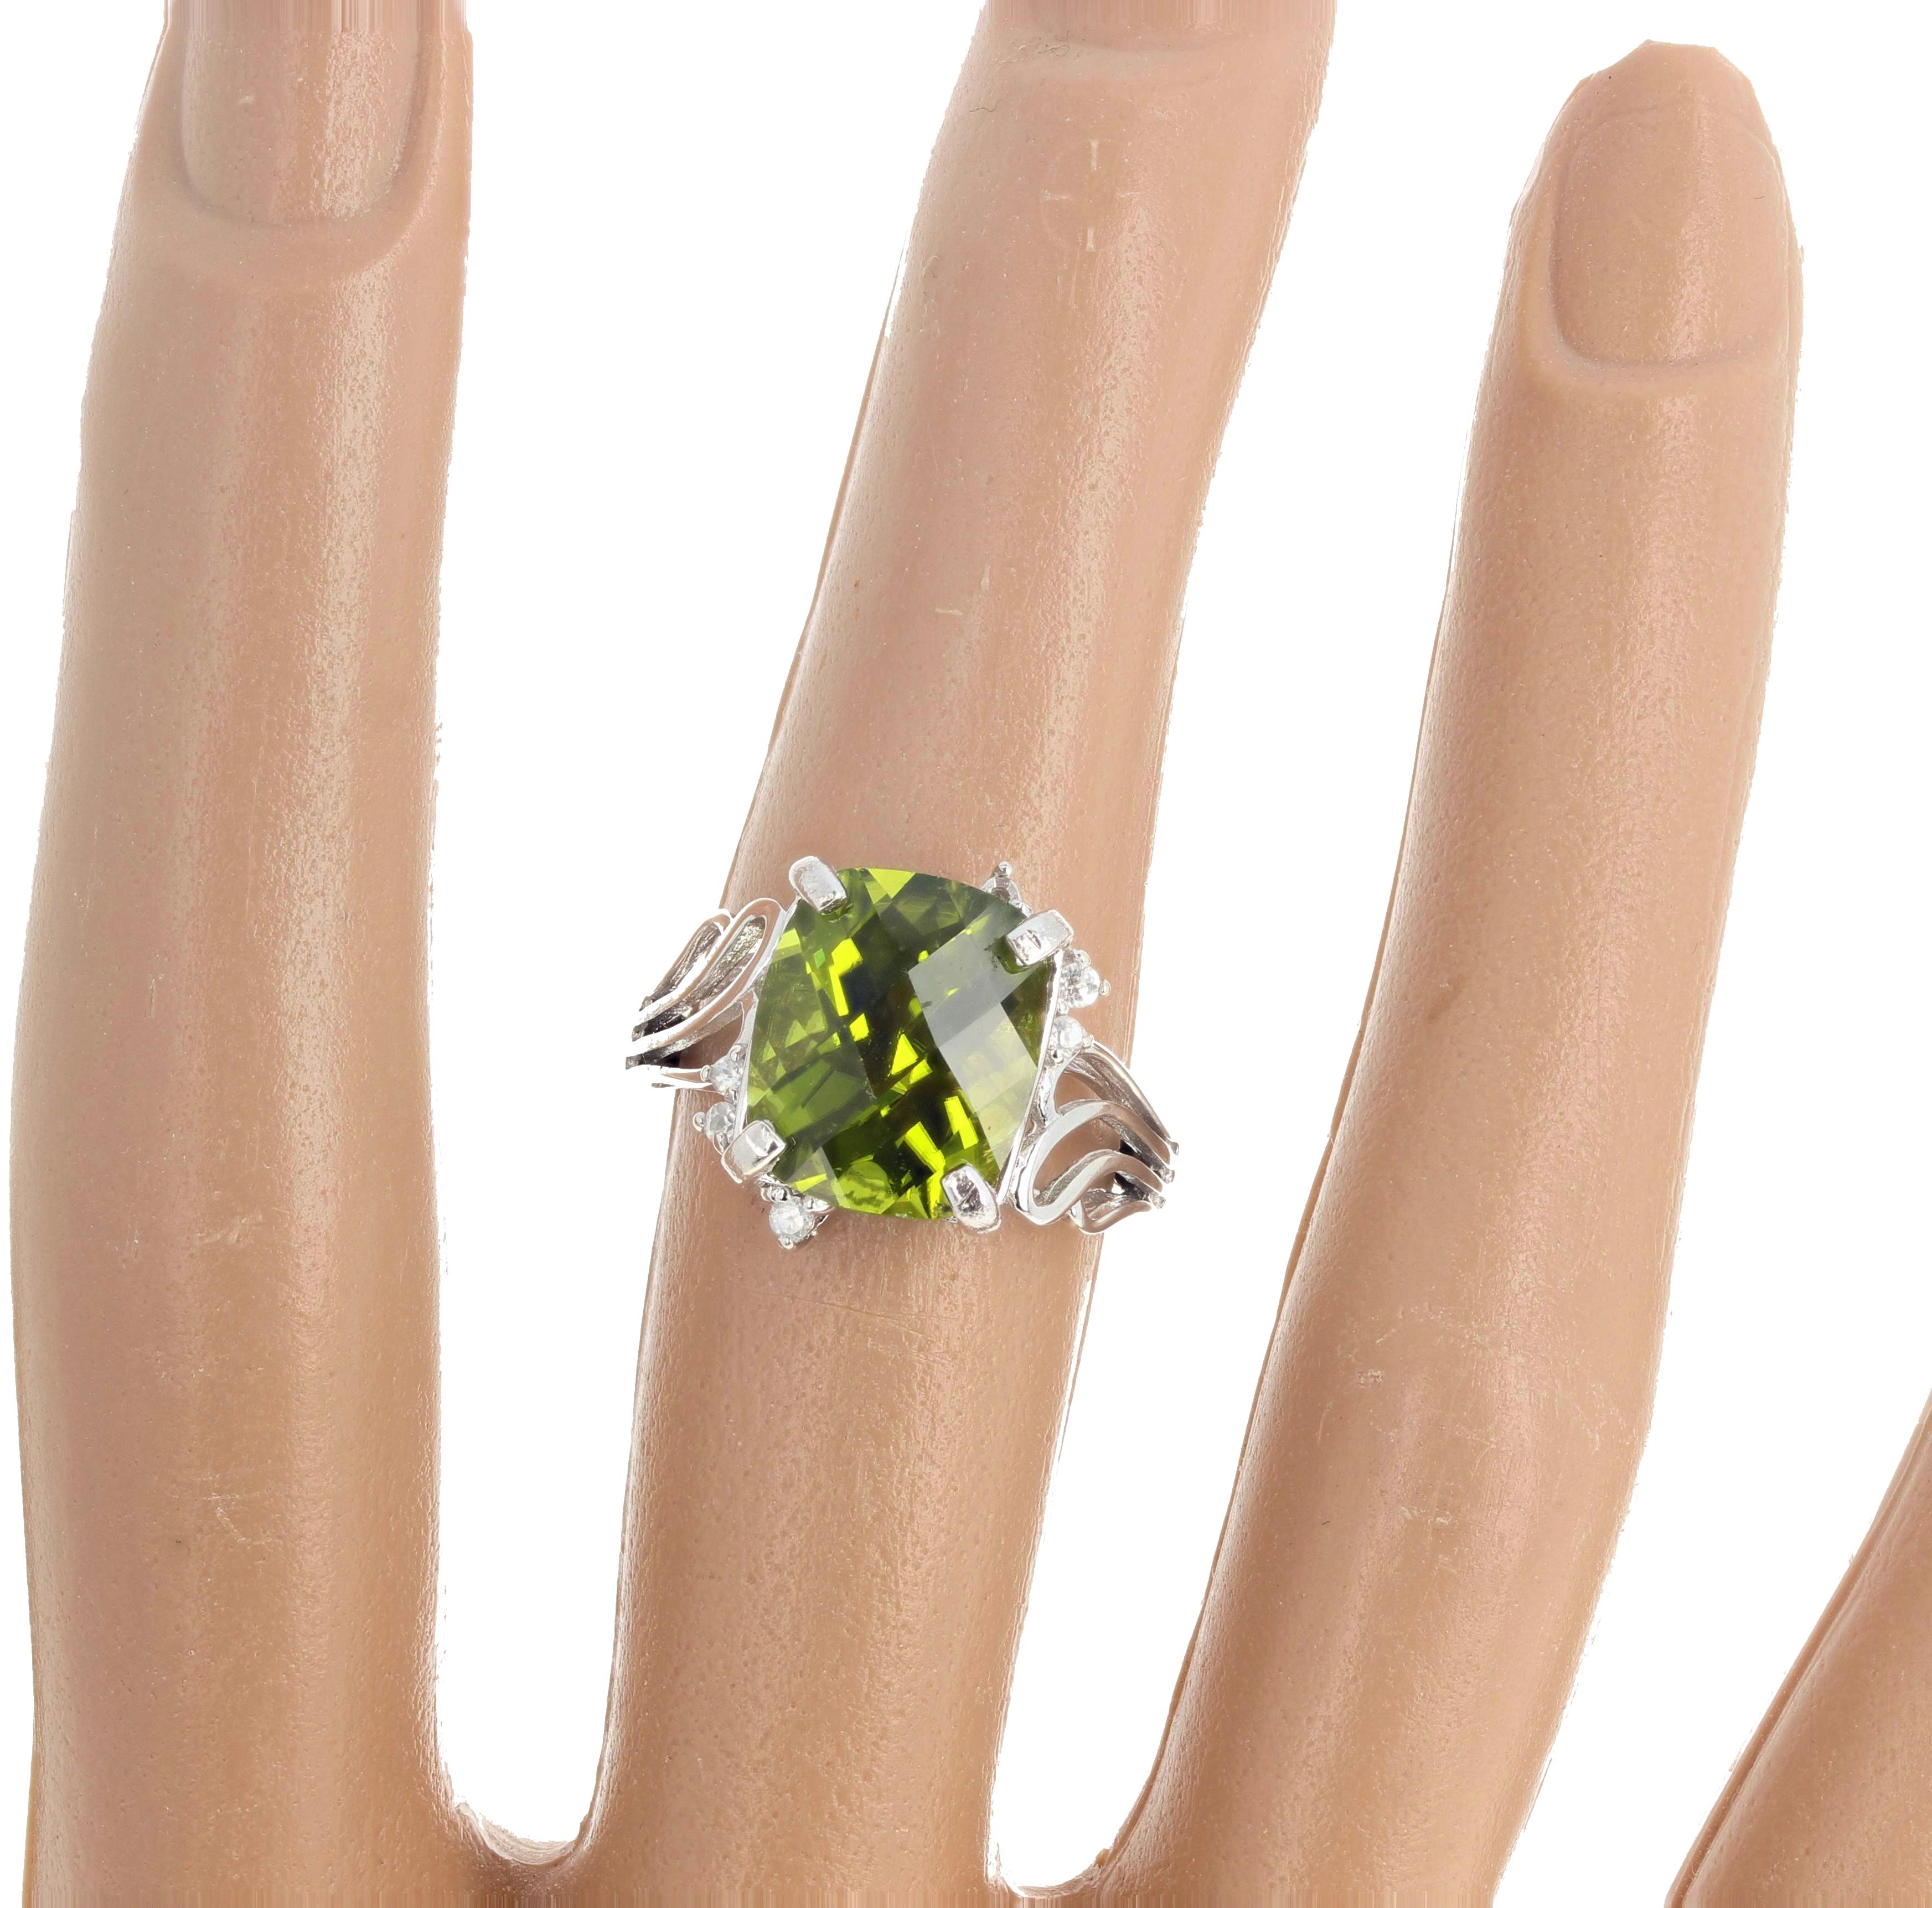 AJD Brilliant Rare Natural Green 7.8 Ct Sri Lanka Zircon & Diamond Ring For Sale 1